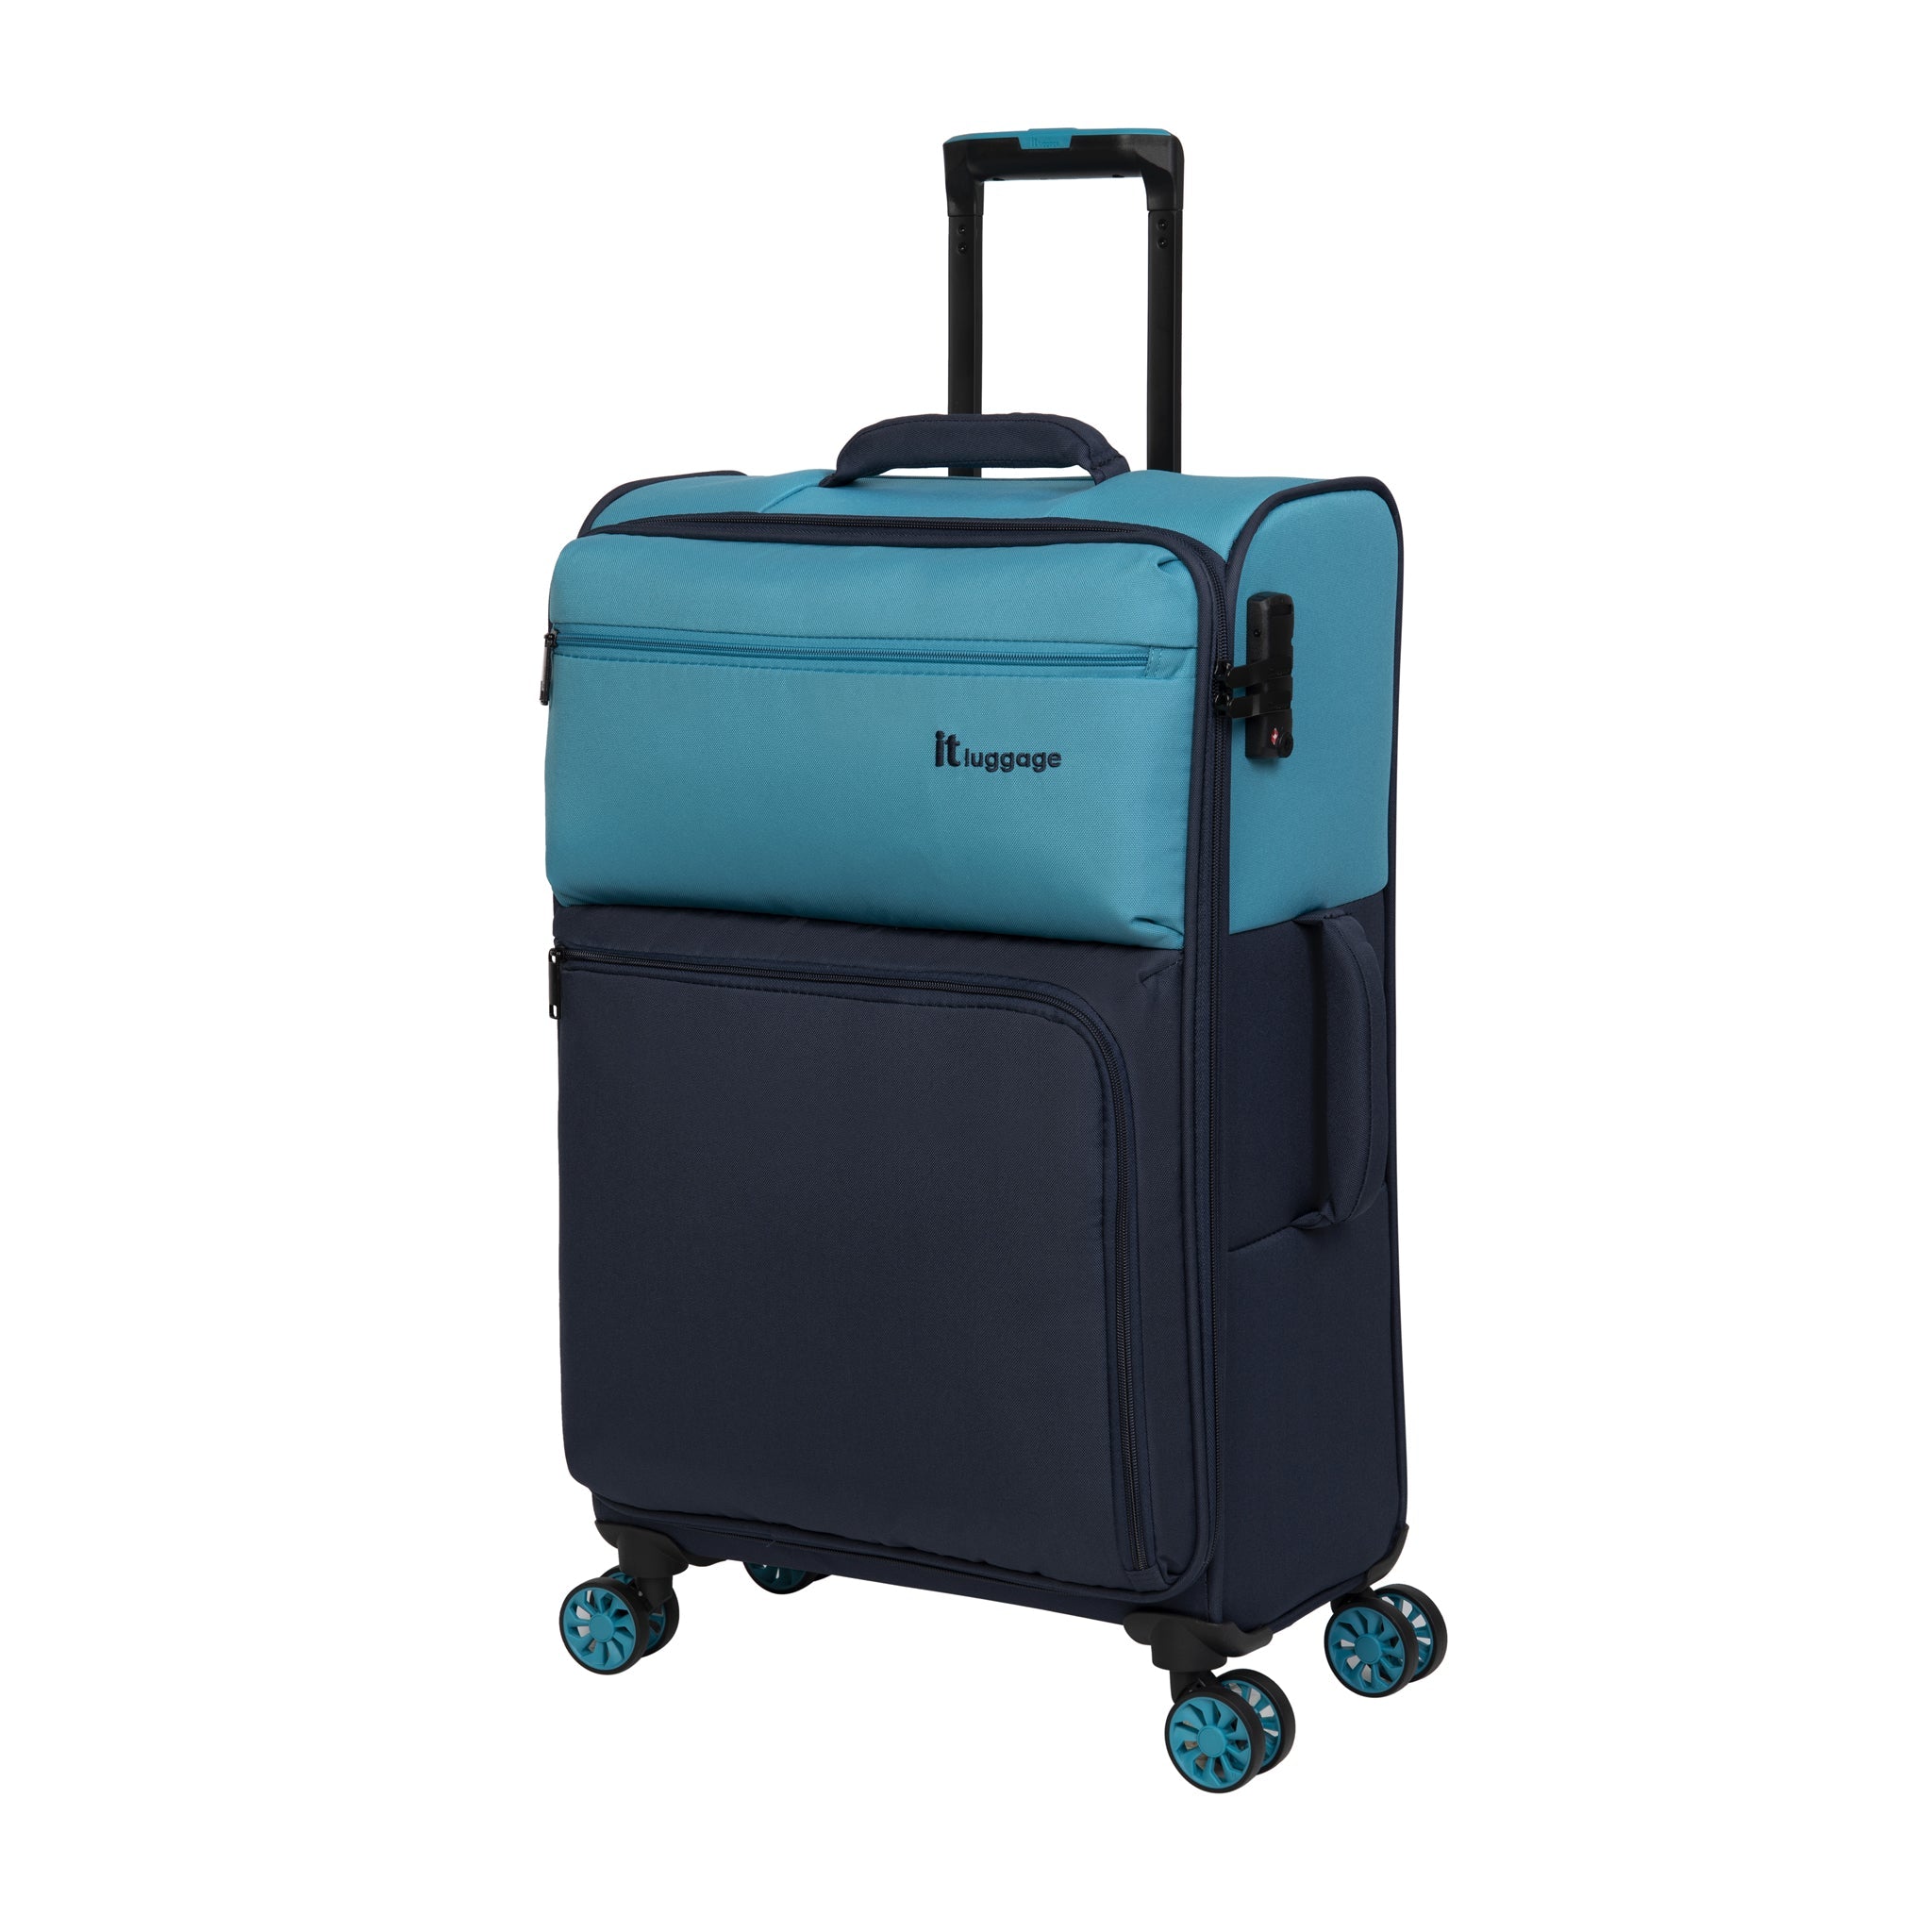 Blue Suitcases u0026 Travel Luggage - it Luggage Europe